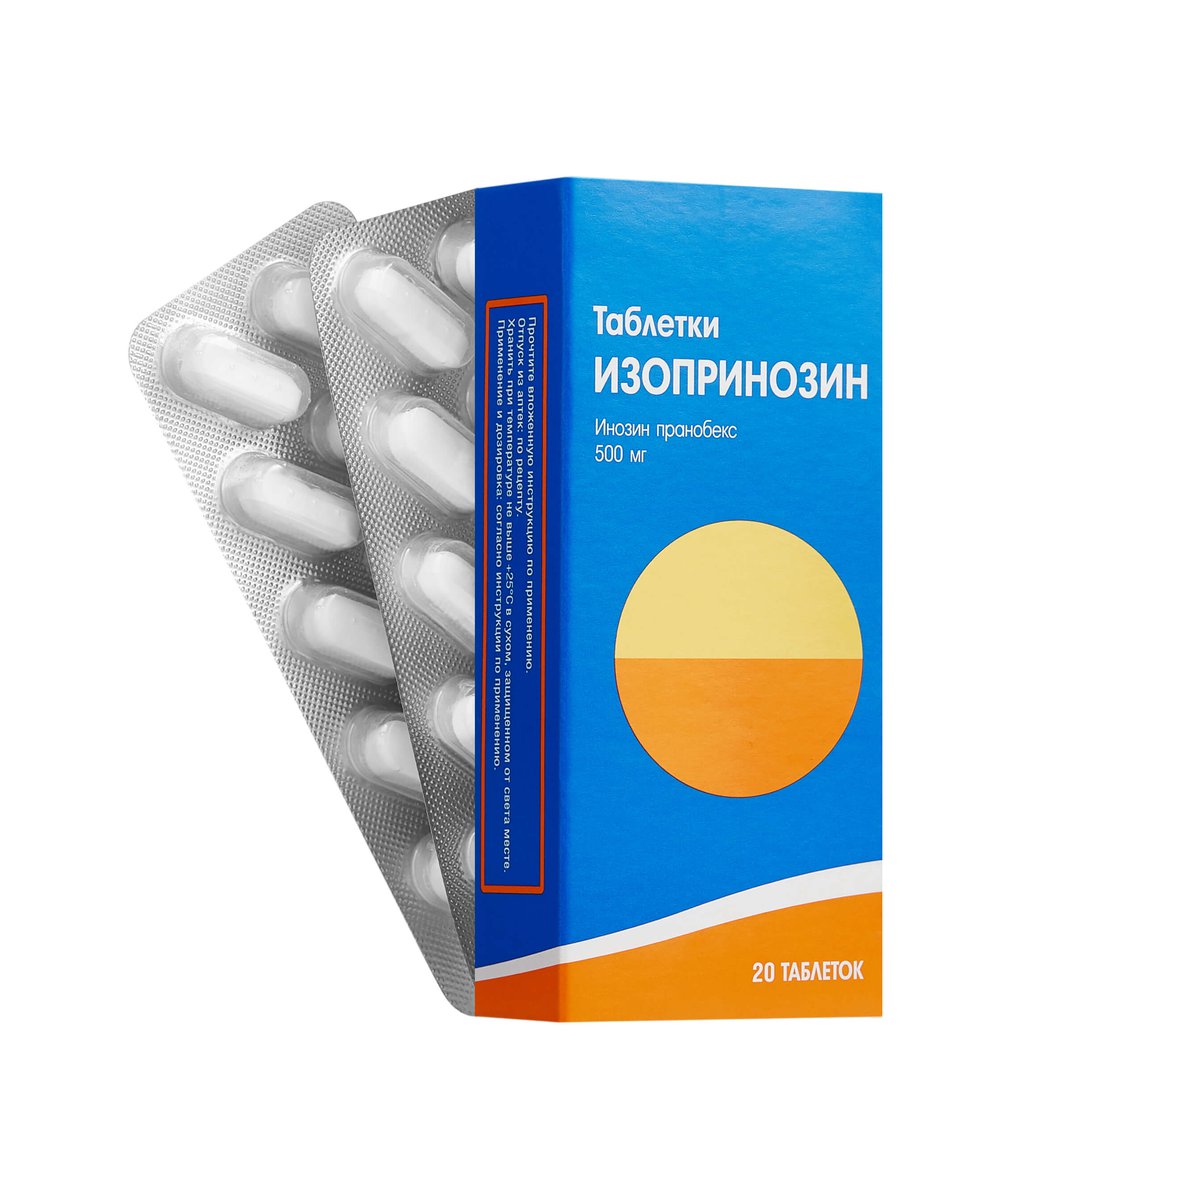 Изопринозин (таблетки, 20 шт, 500 мг) - цена,  онлайн  .